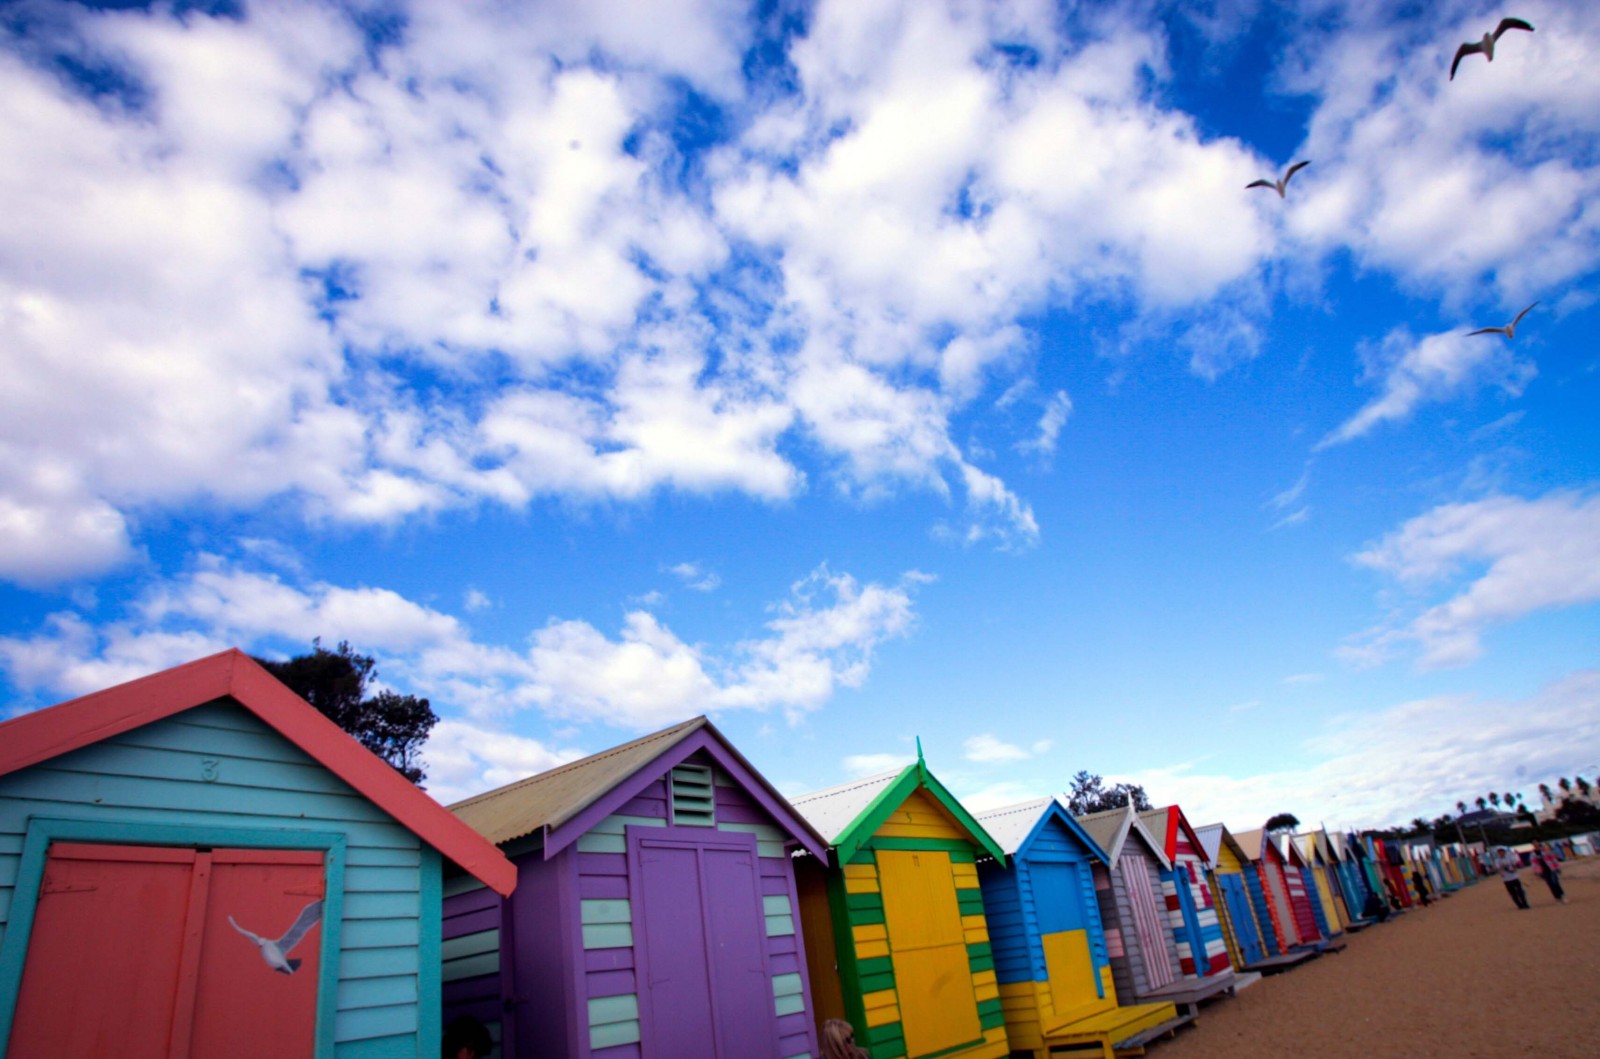 Nhờ bộ sưu tập “nhà tắm” đủ các màu sắc mà Brighton được biết đến như một trong những bãi biển sặc sỡ nhất thế giới.